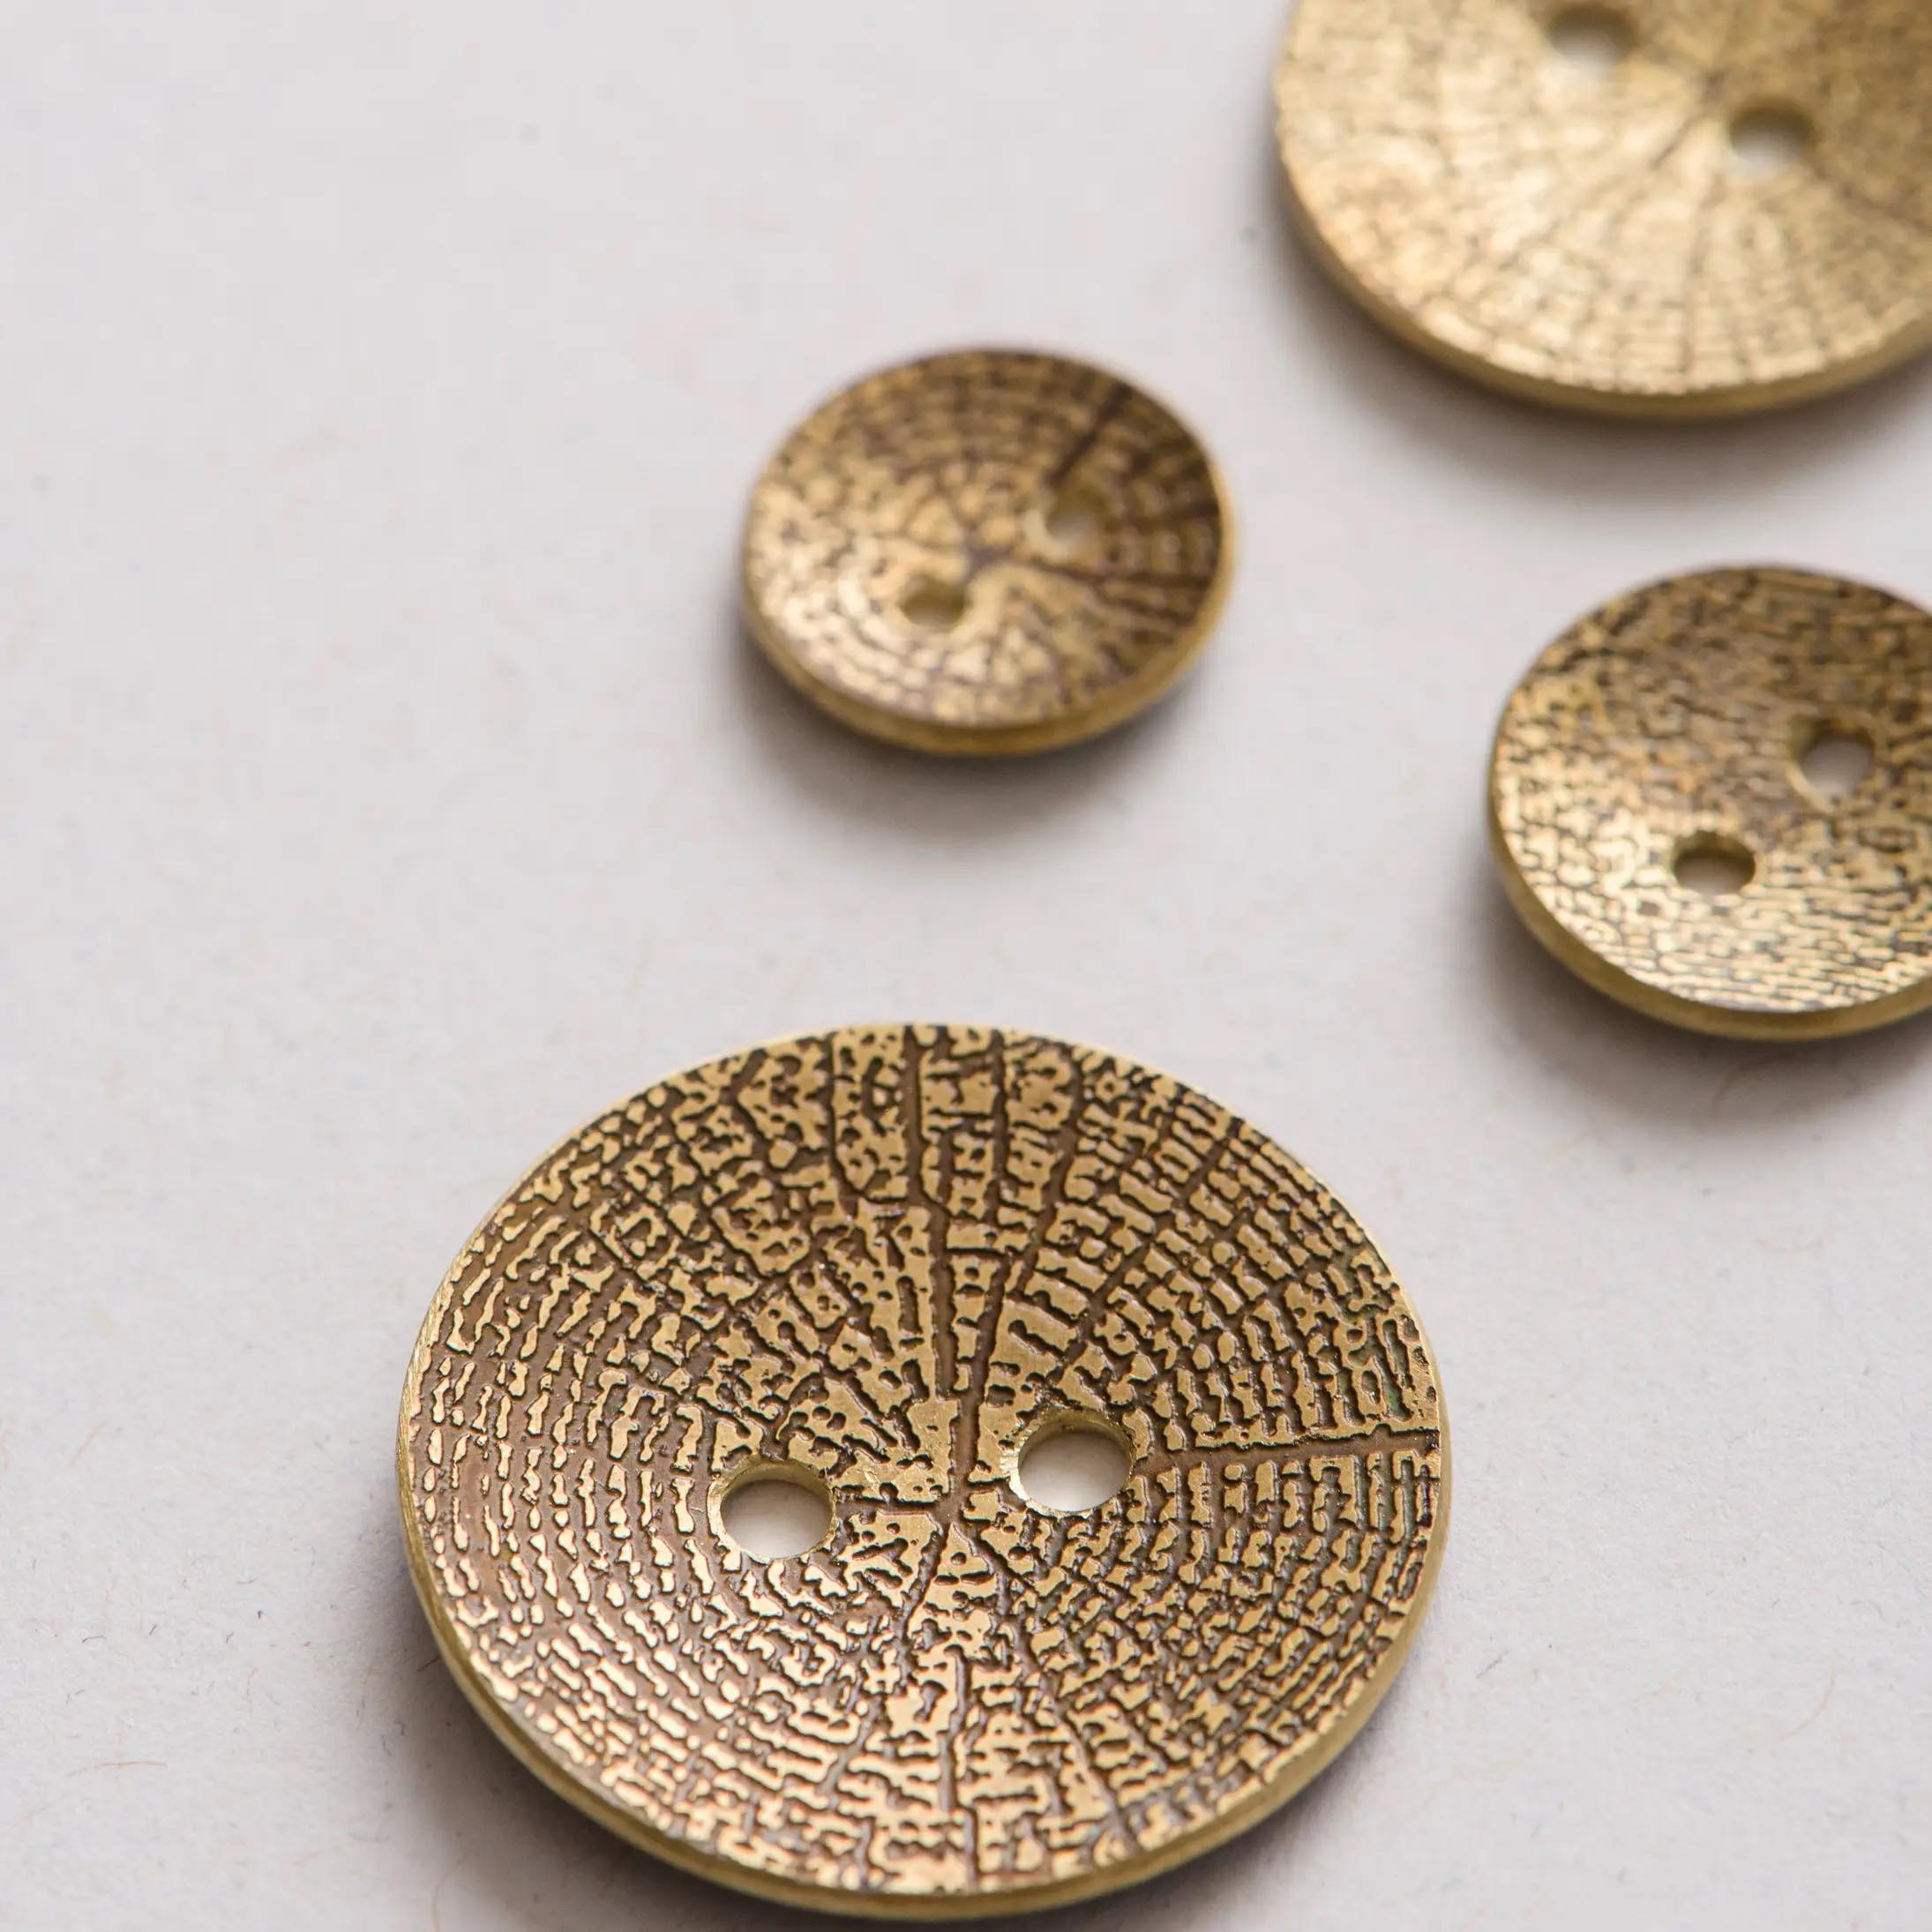 Woodgrain Brass Buttons